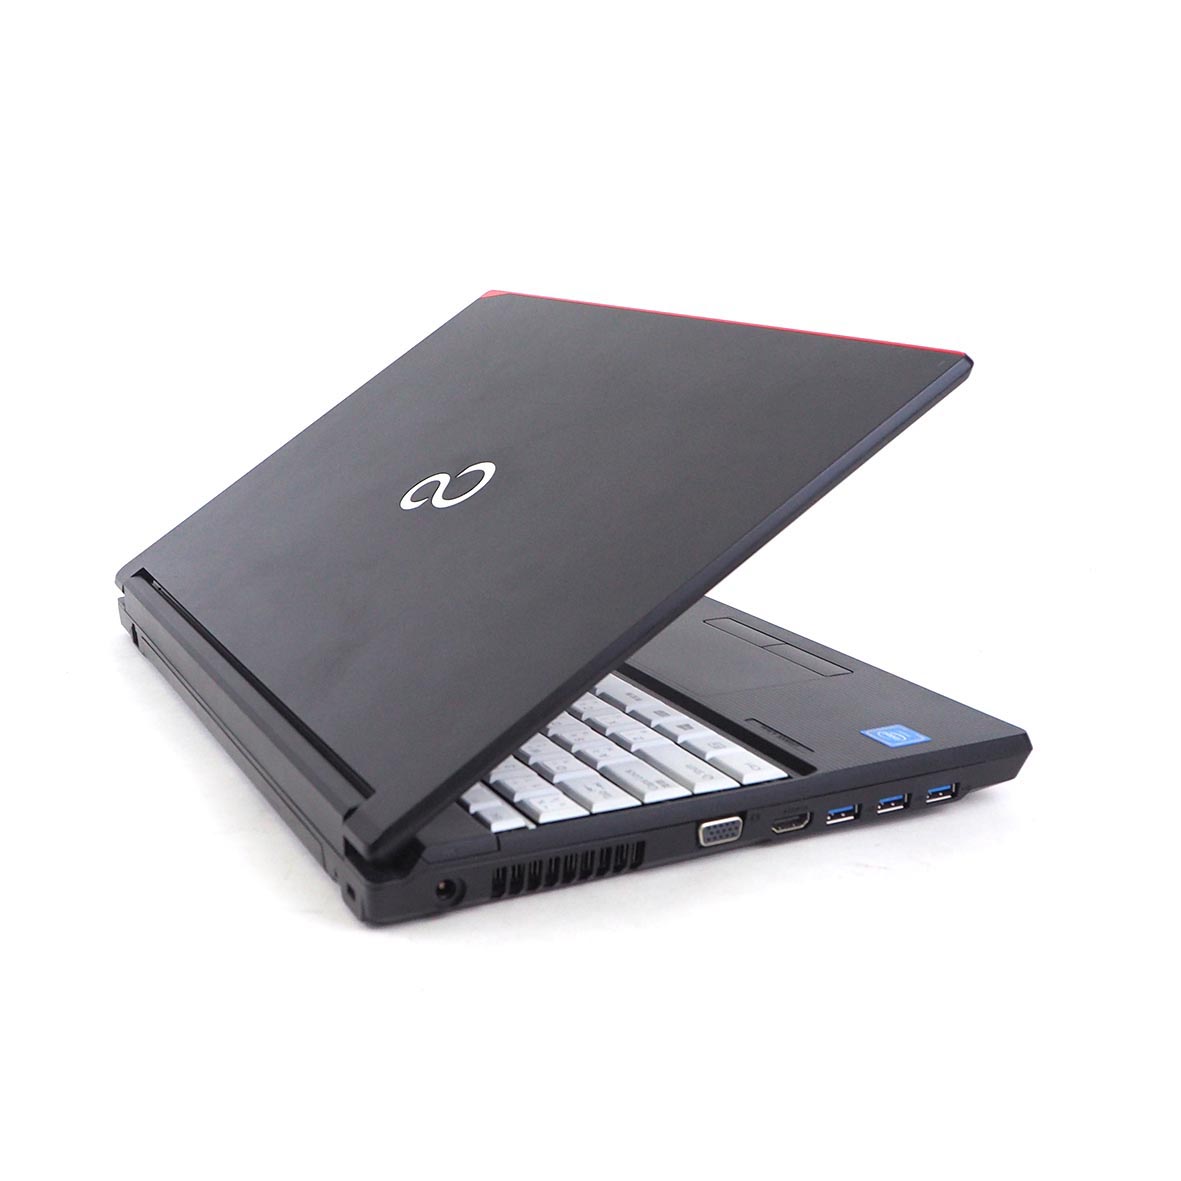 รูปภาพเพิ่มเติมเกี่ยวกับ โน๊ตบุ๊ค Fu LifeBook A577/R Celeron Gen7 / RAM 4-8GB (DDR4) HDD/SSD หน้าจอ 15.6 นิ้ว คีย์แยก Wifi-Blth ในตัว Refhed laptop used notebook คอมพิวเตอร์ 2022 มีประกัน By Totalsol